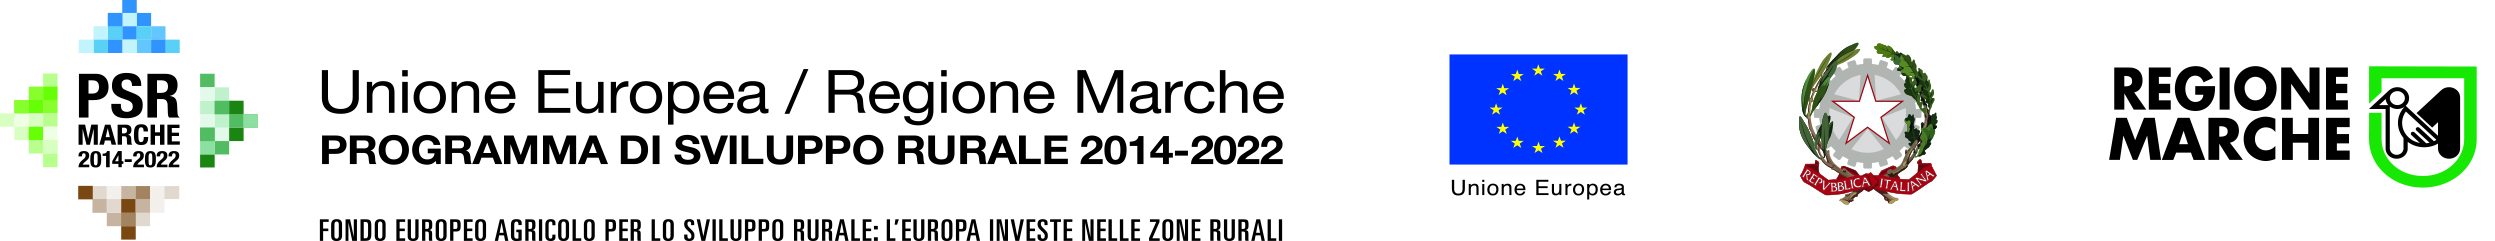 PSR 2014-2022 SOTTOMISURA 1.2 Informazione - Consorzio Marche Bio